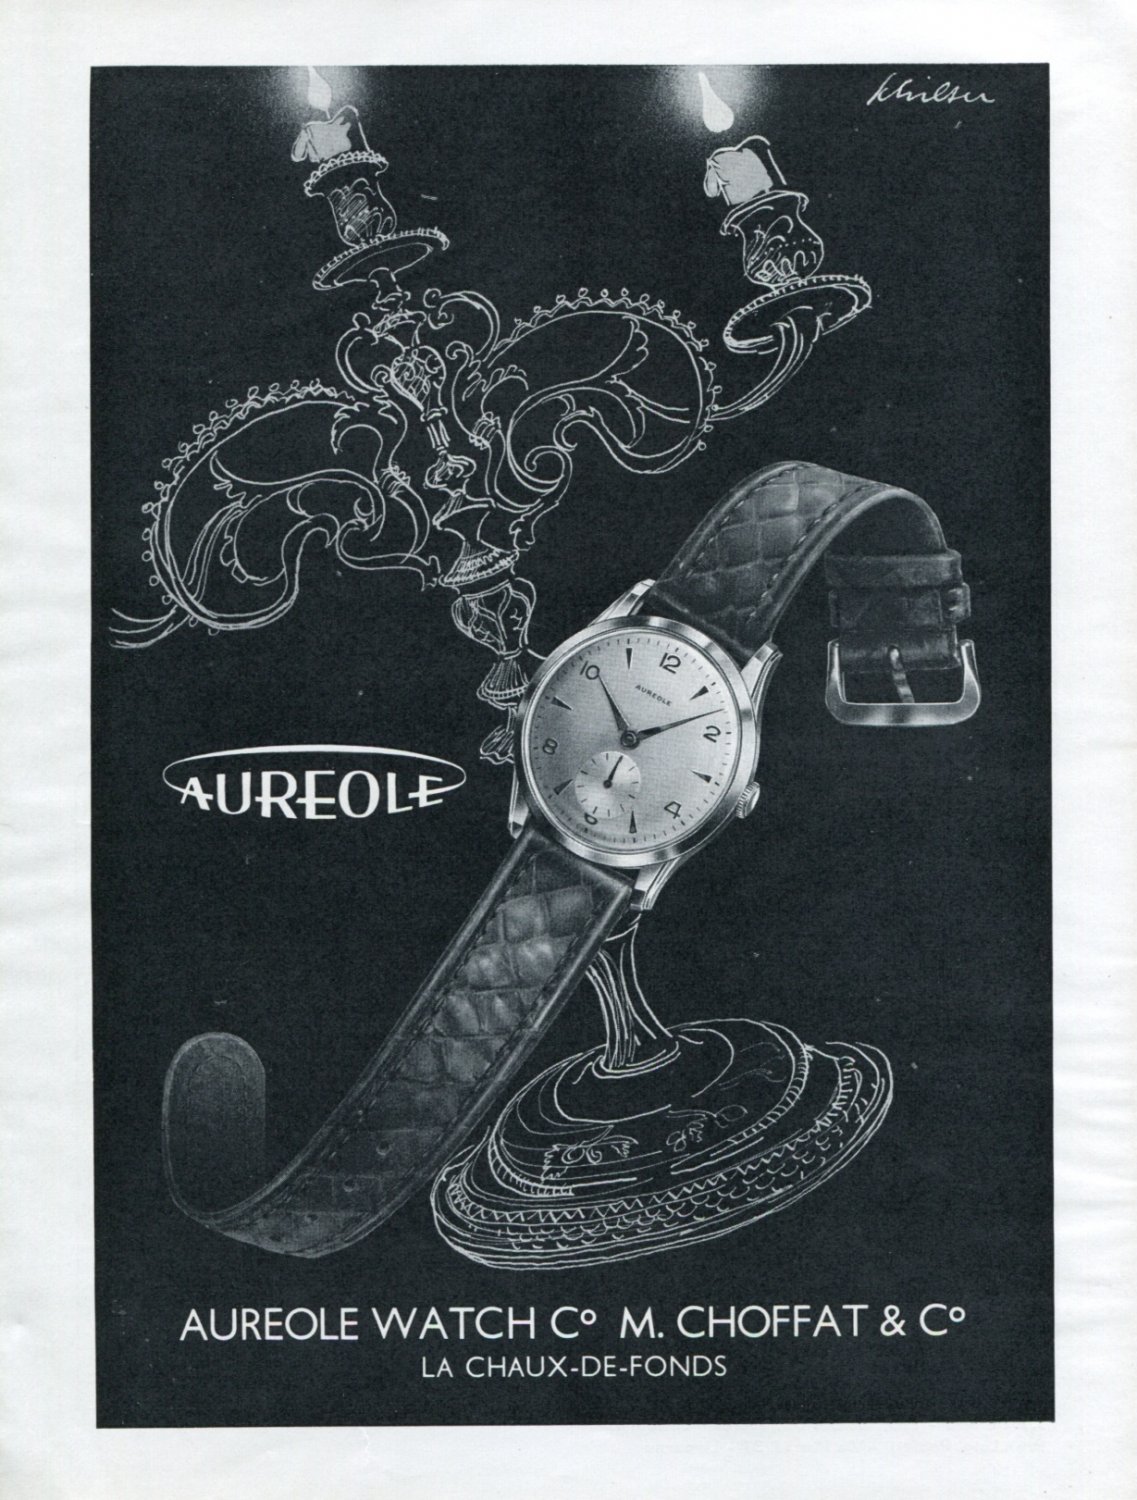 นาฬิกามือสองจากญี่ปุ่น - ✨ AUREOLE QUARTZ ✨ SWISS MOVT เครื่องสวิส  ราคาไฟไหม้ 🔥 990บ. เท่านั้น!! 🔥 🇨🇭 นาฬิกาจากสวิตเซอร์แลนด์  ที่มีอายุแบรนด์ มากกว่า 150ปี 🇨🇭 - สายถัก งานปราณีต - หน้าปัดสีขาว -  ขนาดหน้าปัด 30 MM - สายยาวบัคเคิลสไลด์ เลื่อนปรับ ...